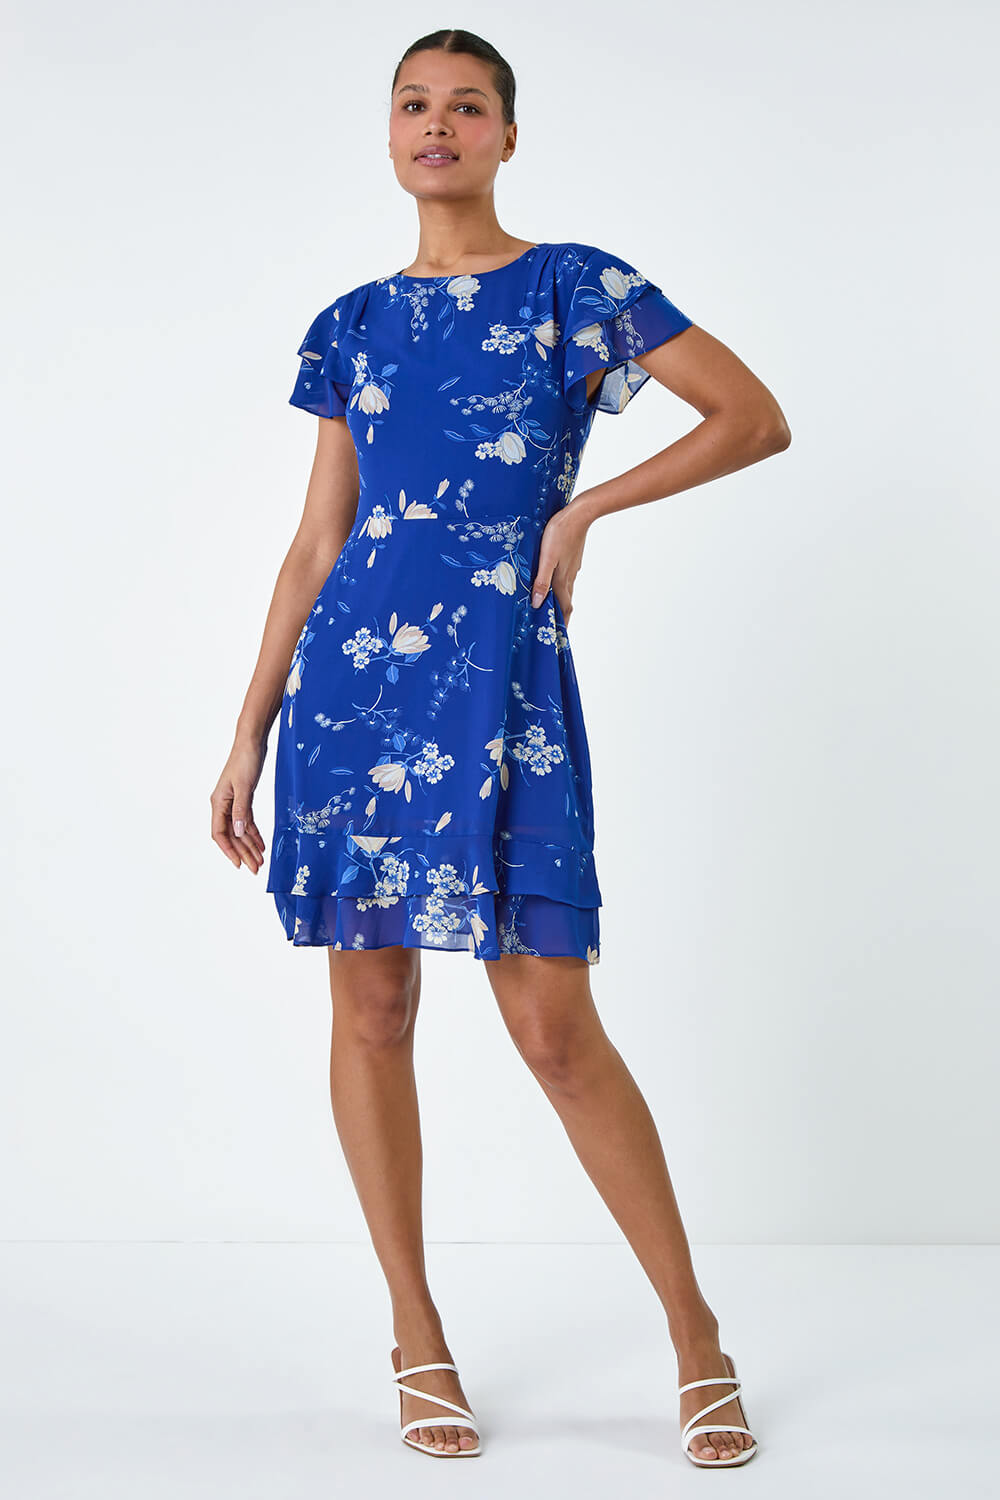 Blue Floral Print Frill Detailed Skater Dress, Image 2 of 5